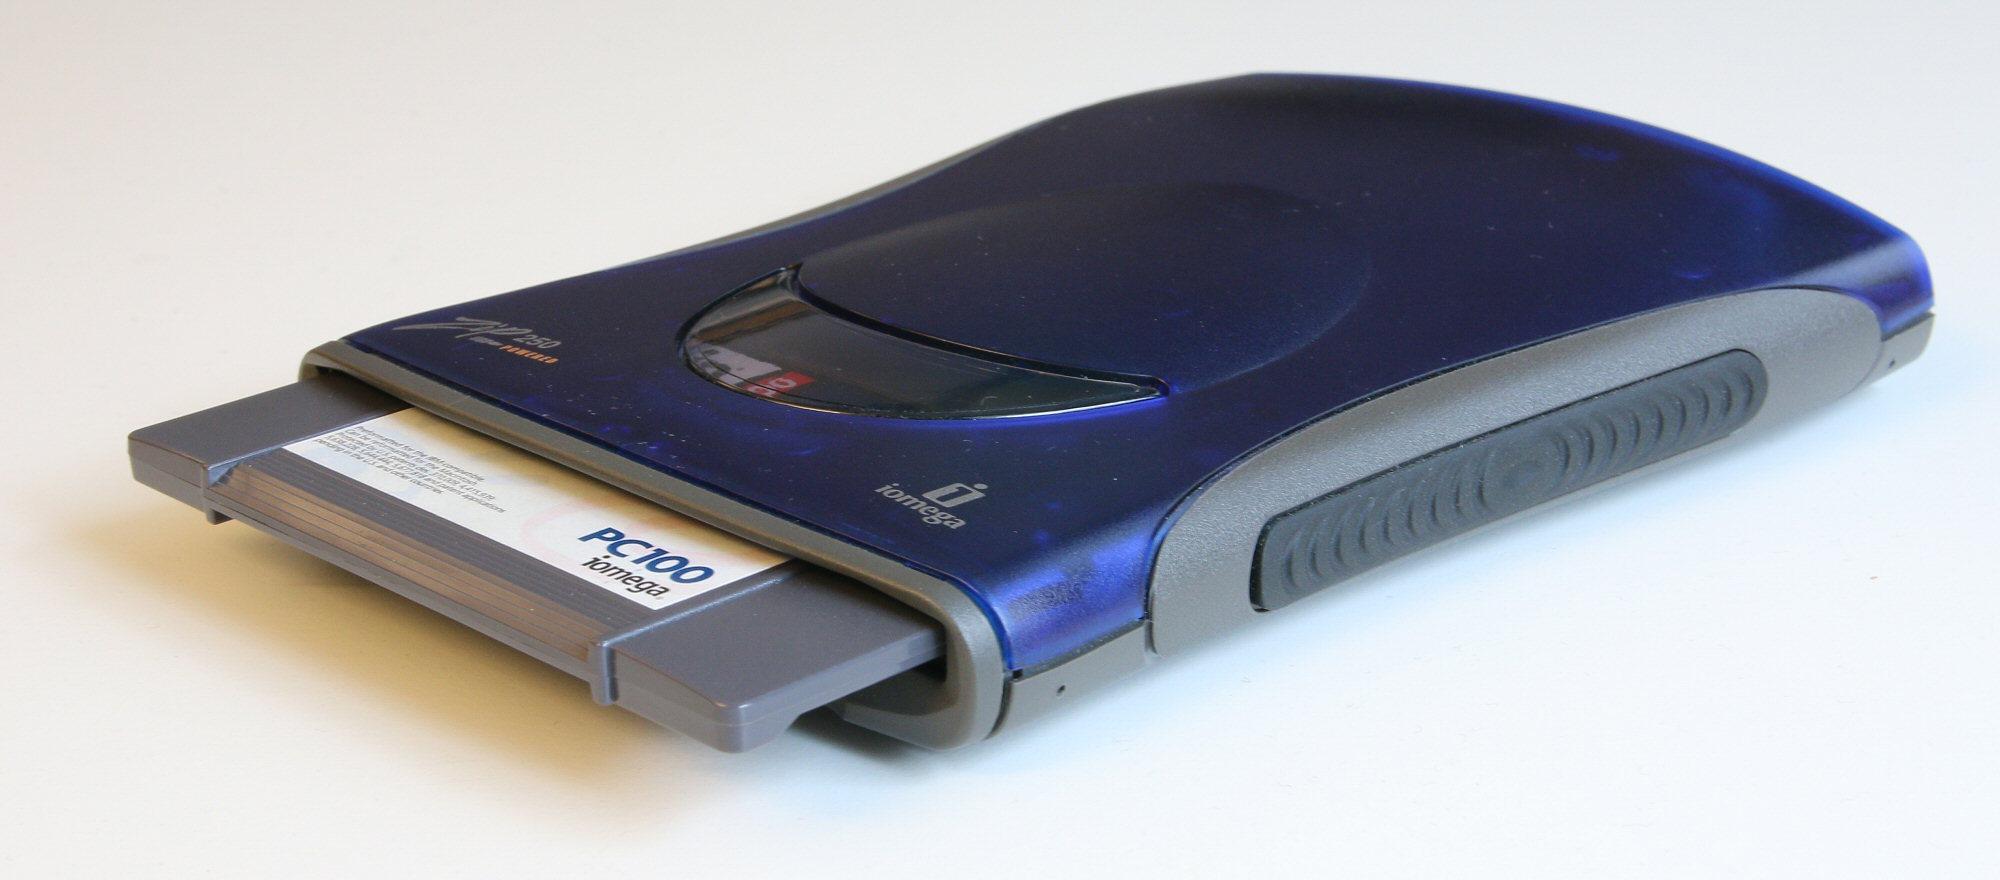 Zip-stasjonene kunne etter hvert også ta disketter med 250 MB kapasitet, og klarte seg på strøm fra USB-porten.Foto: Vegar Jansen, Hardware.no